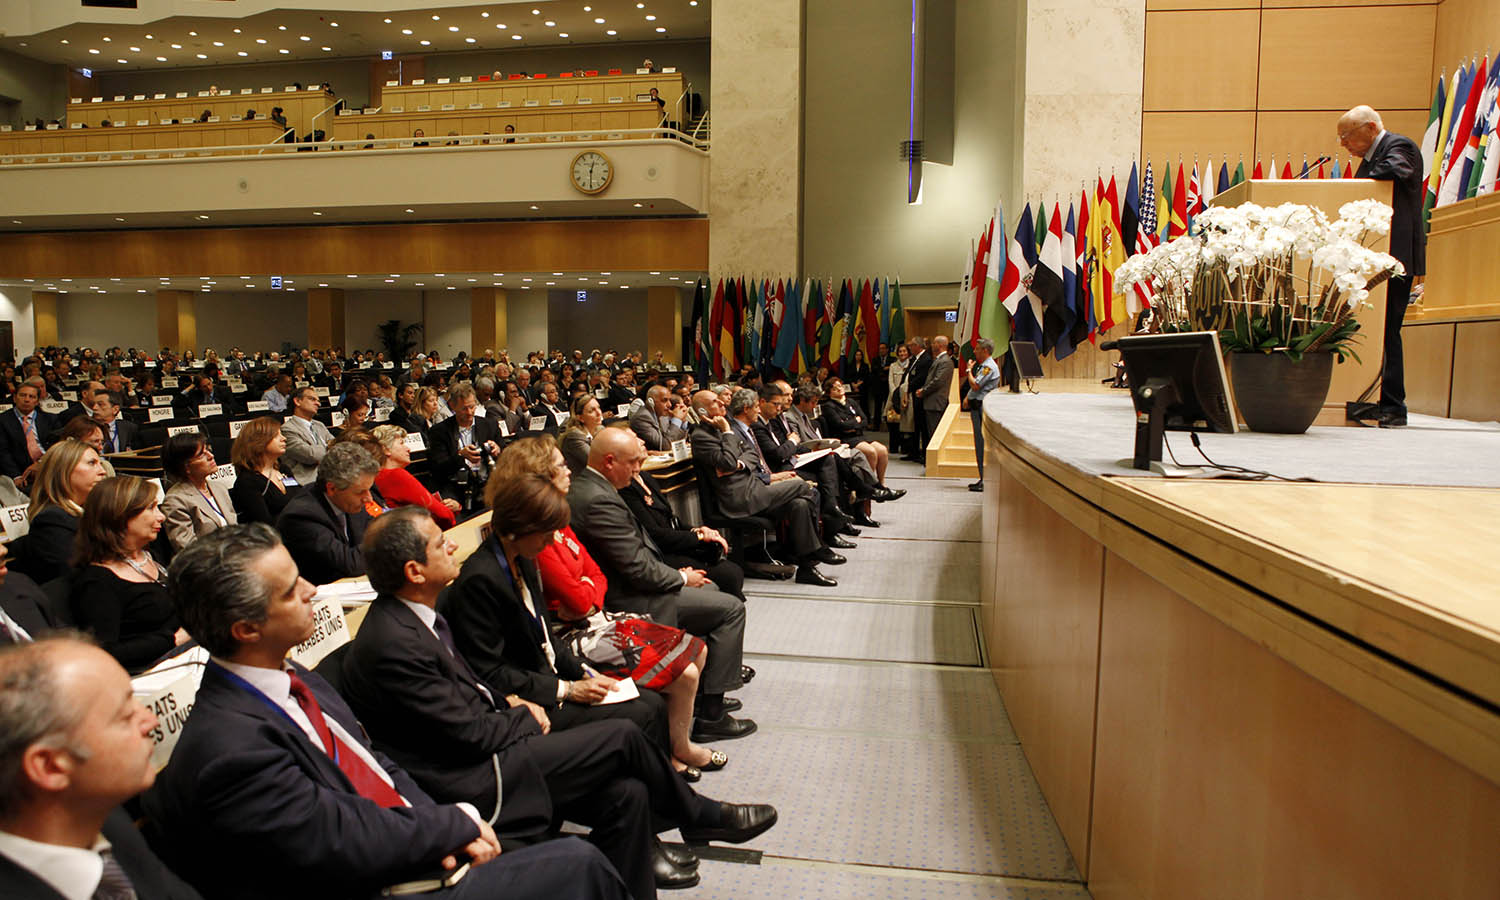 101a Conferenza internazionale del lavoro a Ginevra. Visita di Giorgio Napolitano, all’epoca presidente della Repubblica italiana, Archivi storici OIL, 2012.